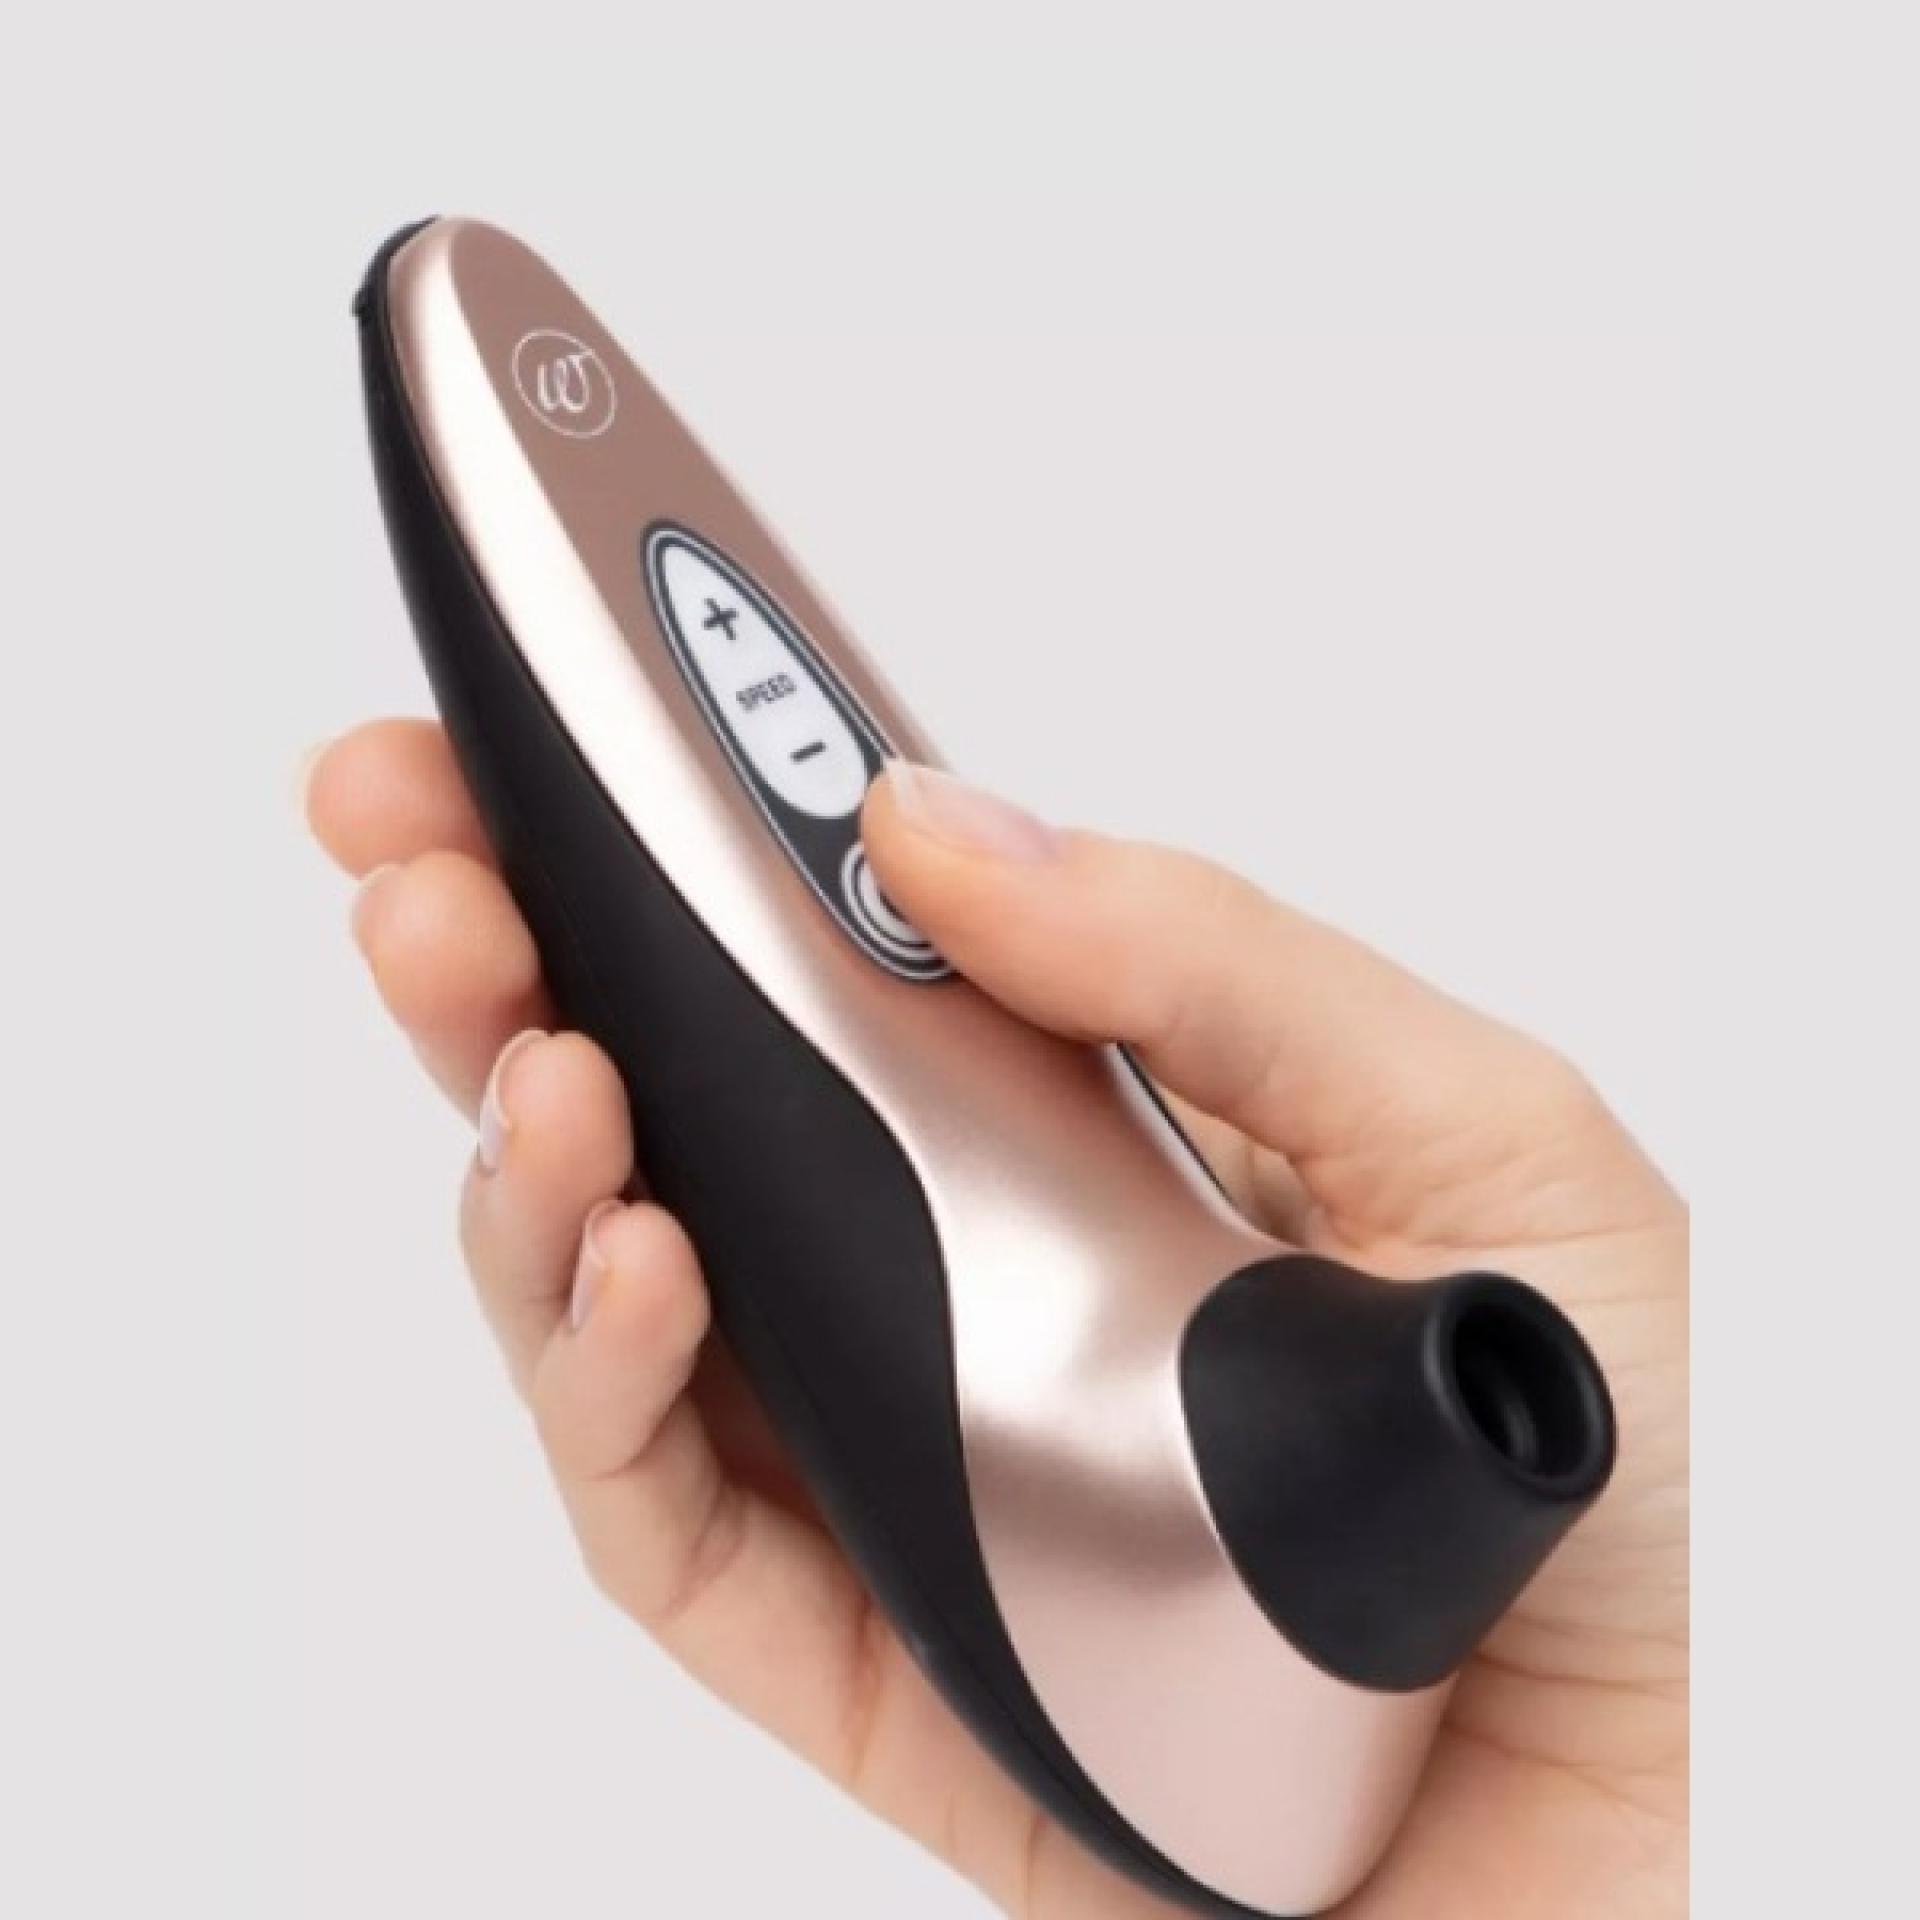 Womanizer Pro 40 clitoral stimulation vibrator